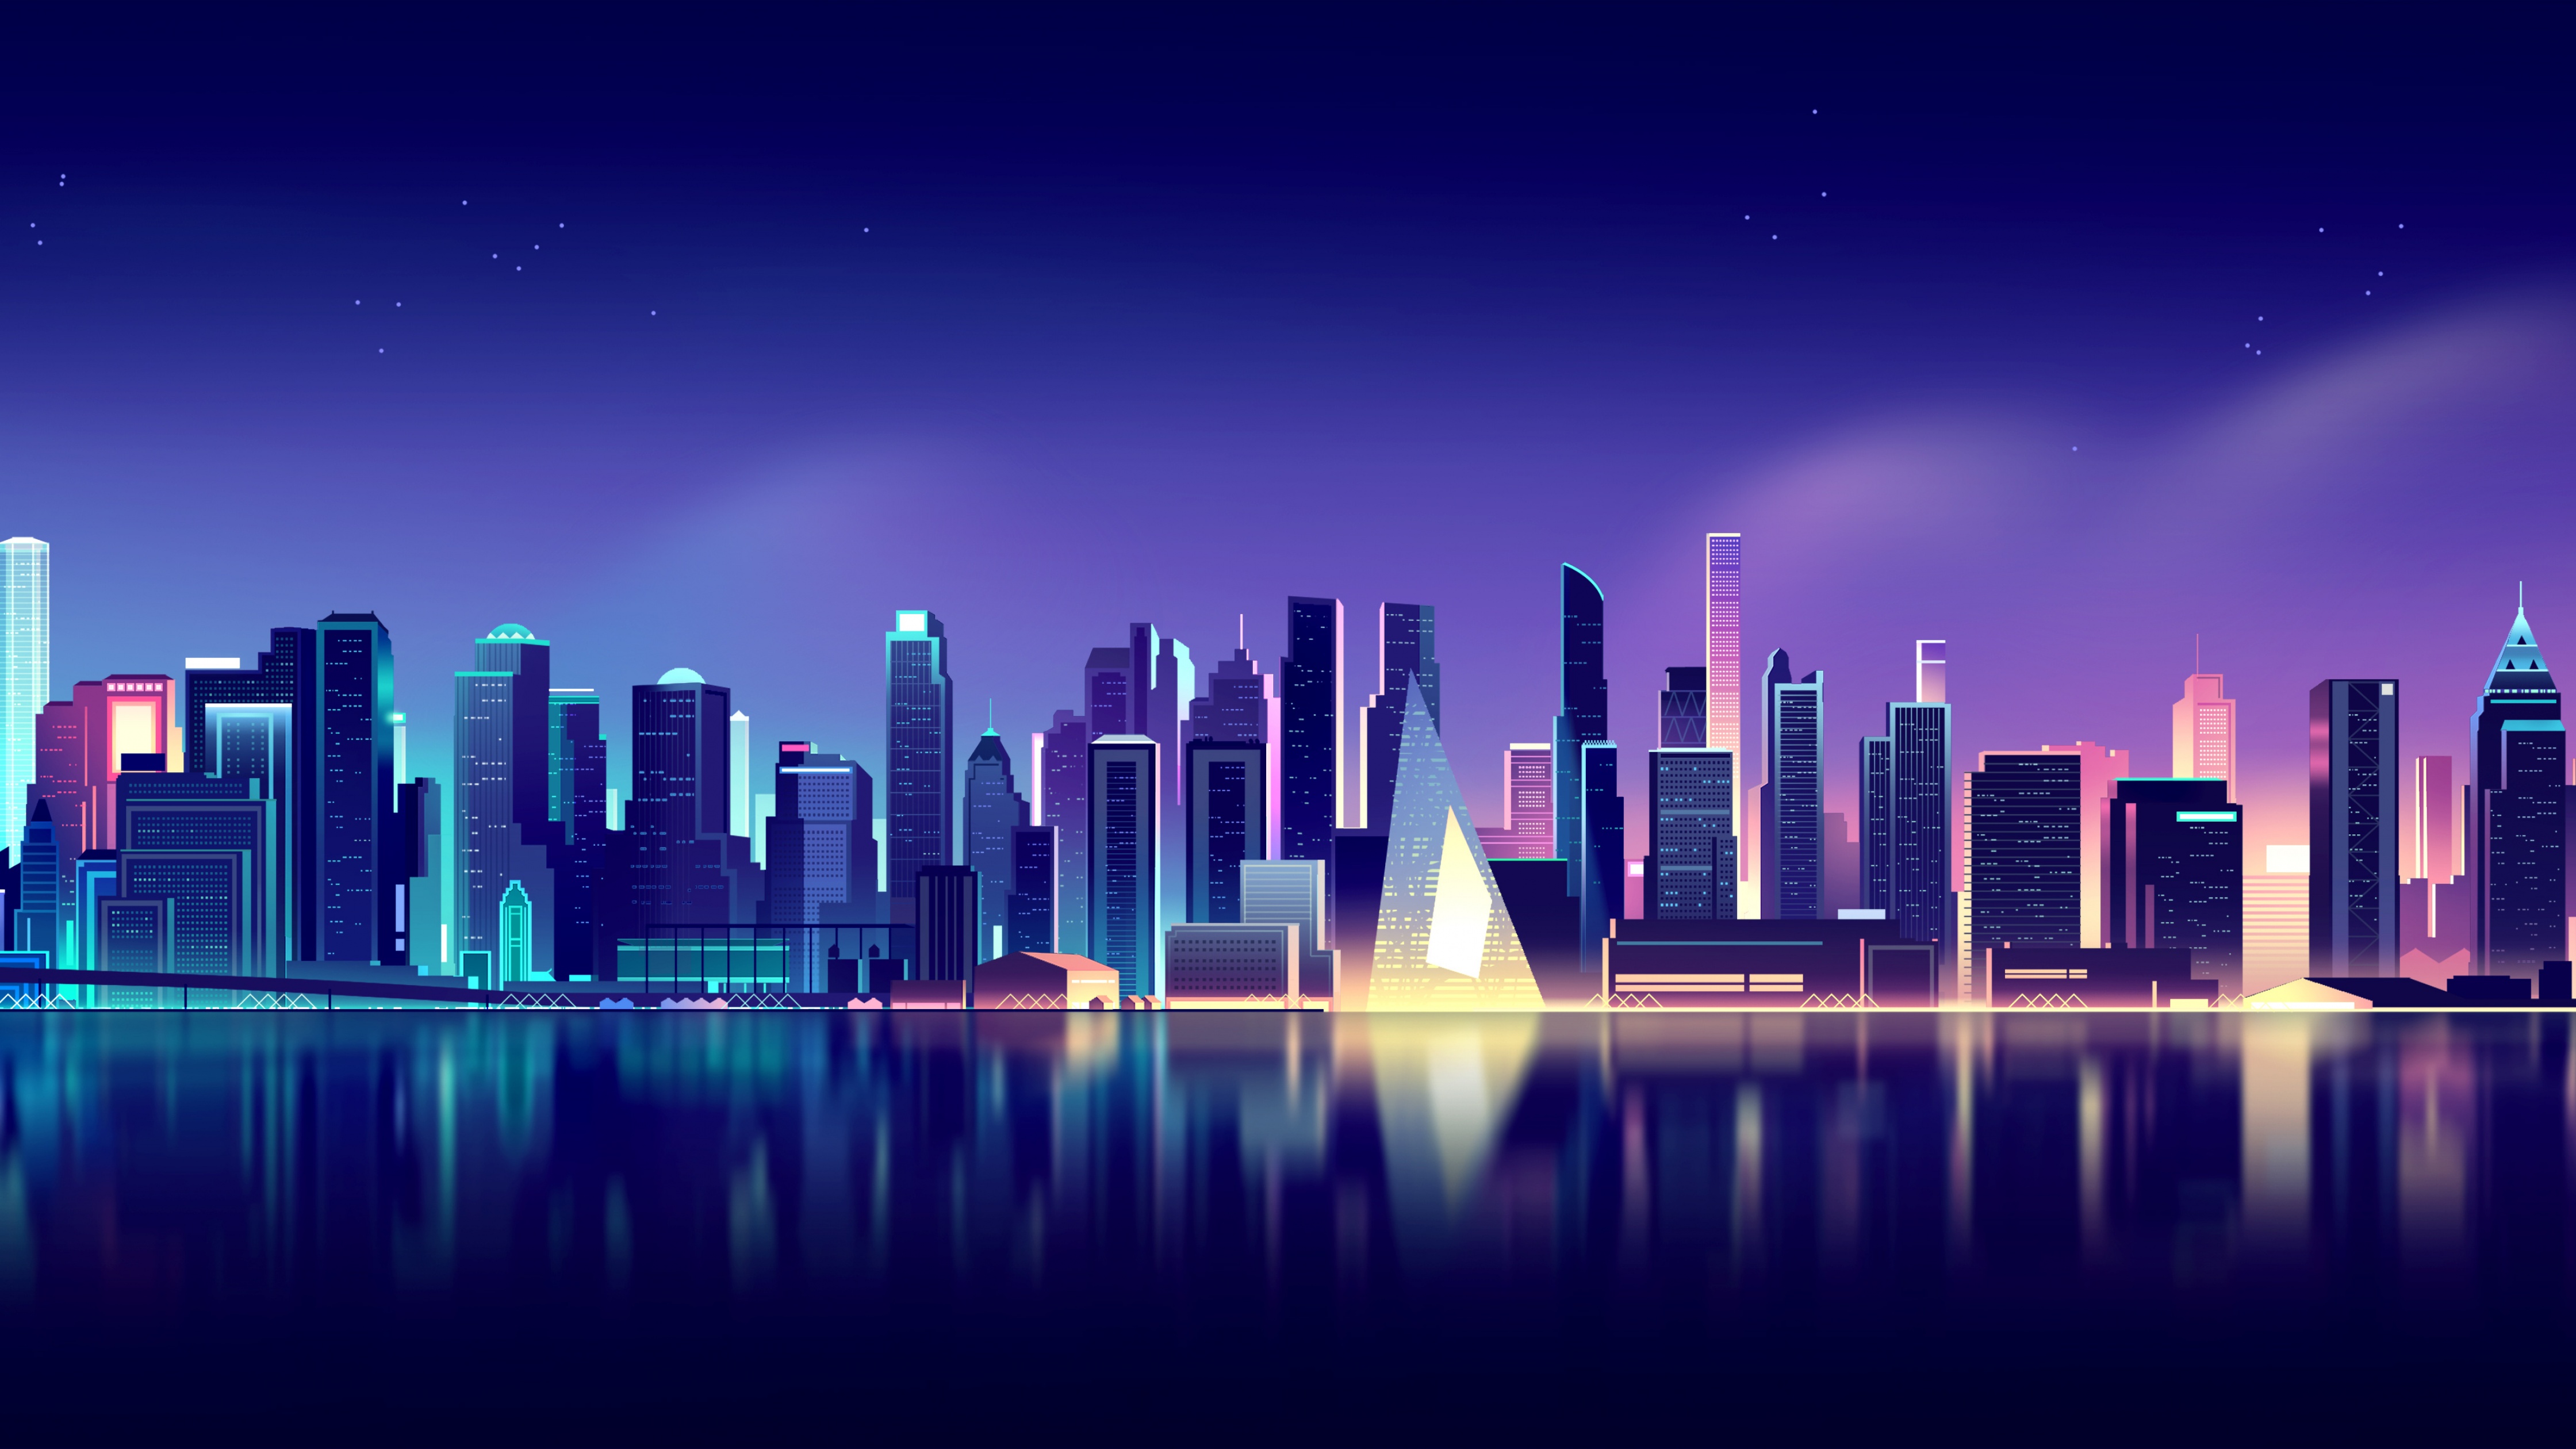 Thành phố đèn neon: Thành phố đèn neon là nơi chuyển động và lung linh nhất đêm nay! Hãy cùng khám phá những góc phố chan chứa sự sống động và đầy màu sắc của thành phố đèn neon, nơi mà đèn lấp lánh ngời sáng cả một vùng trời đêm.